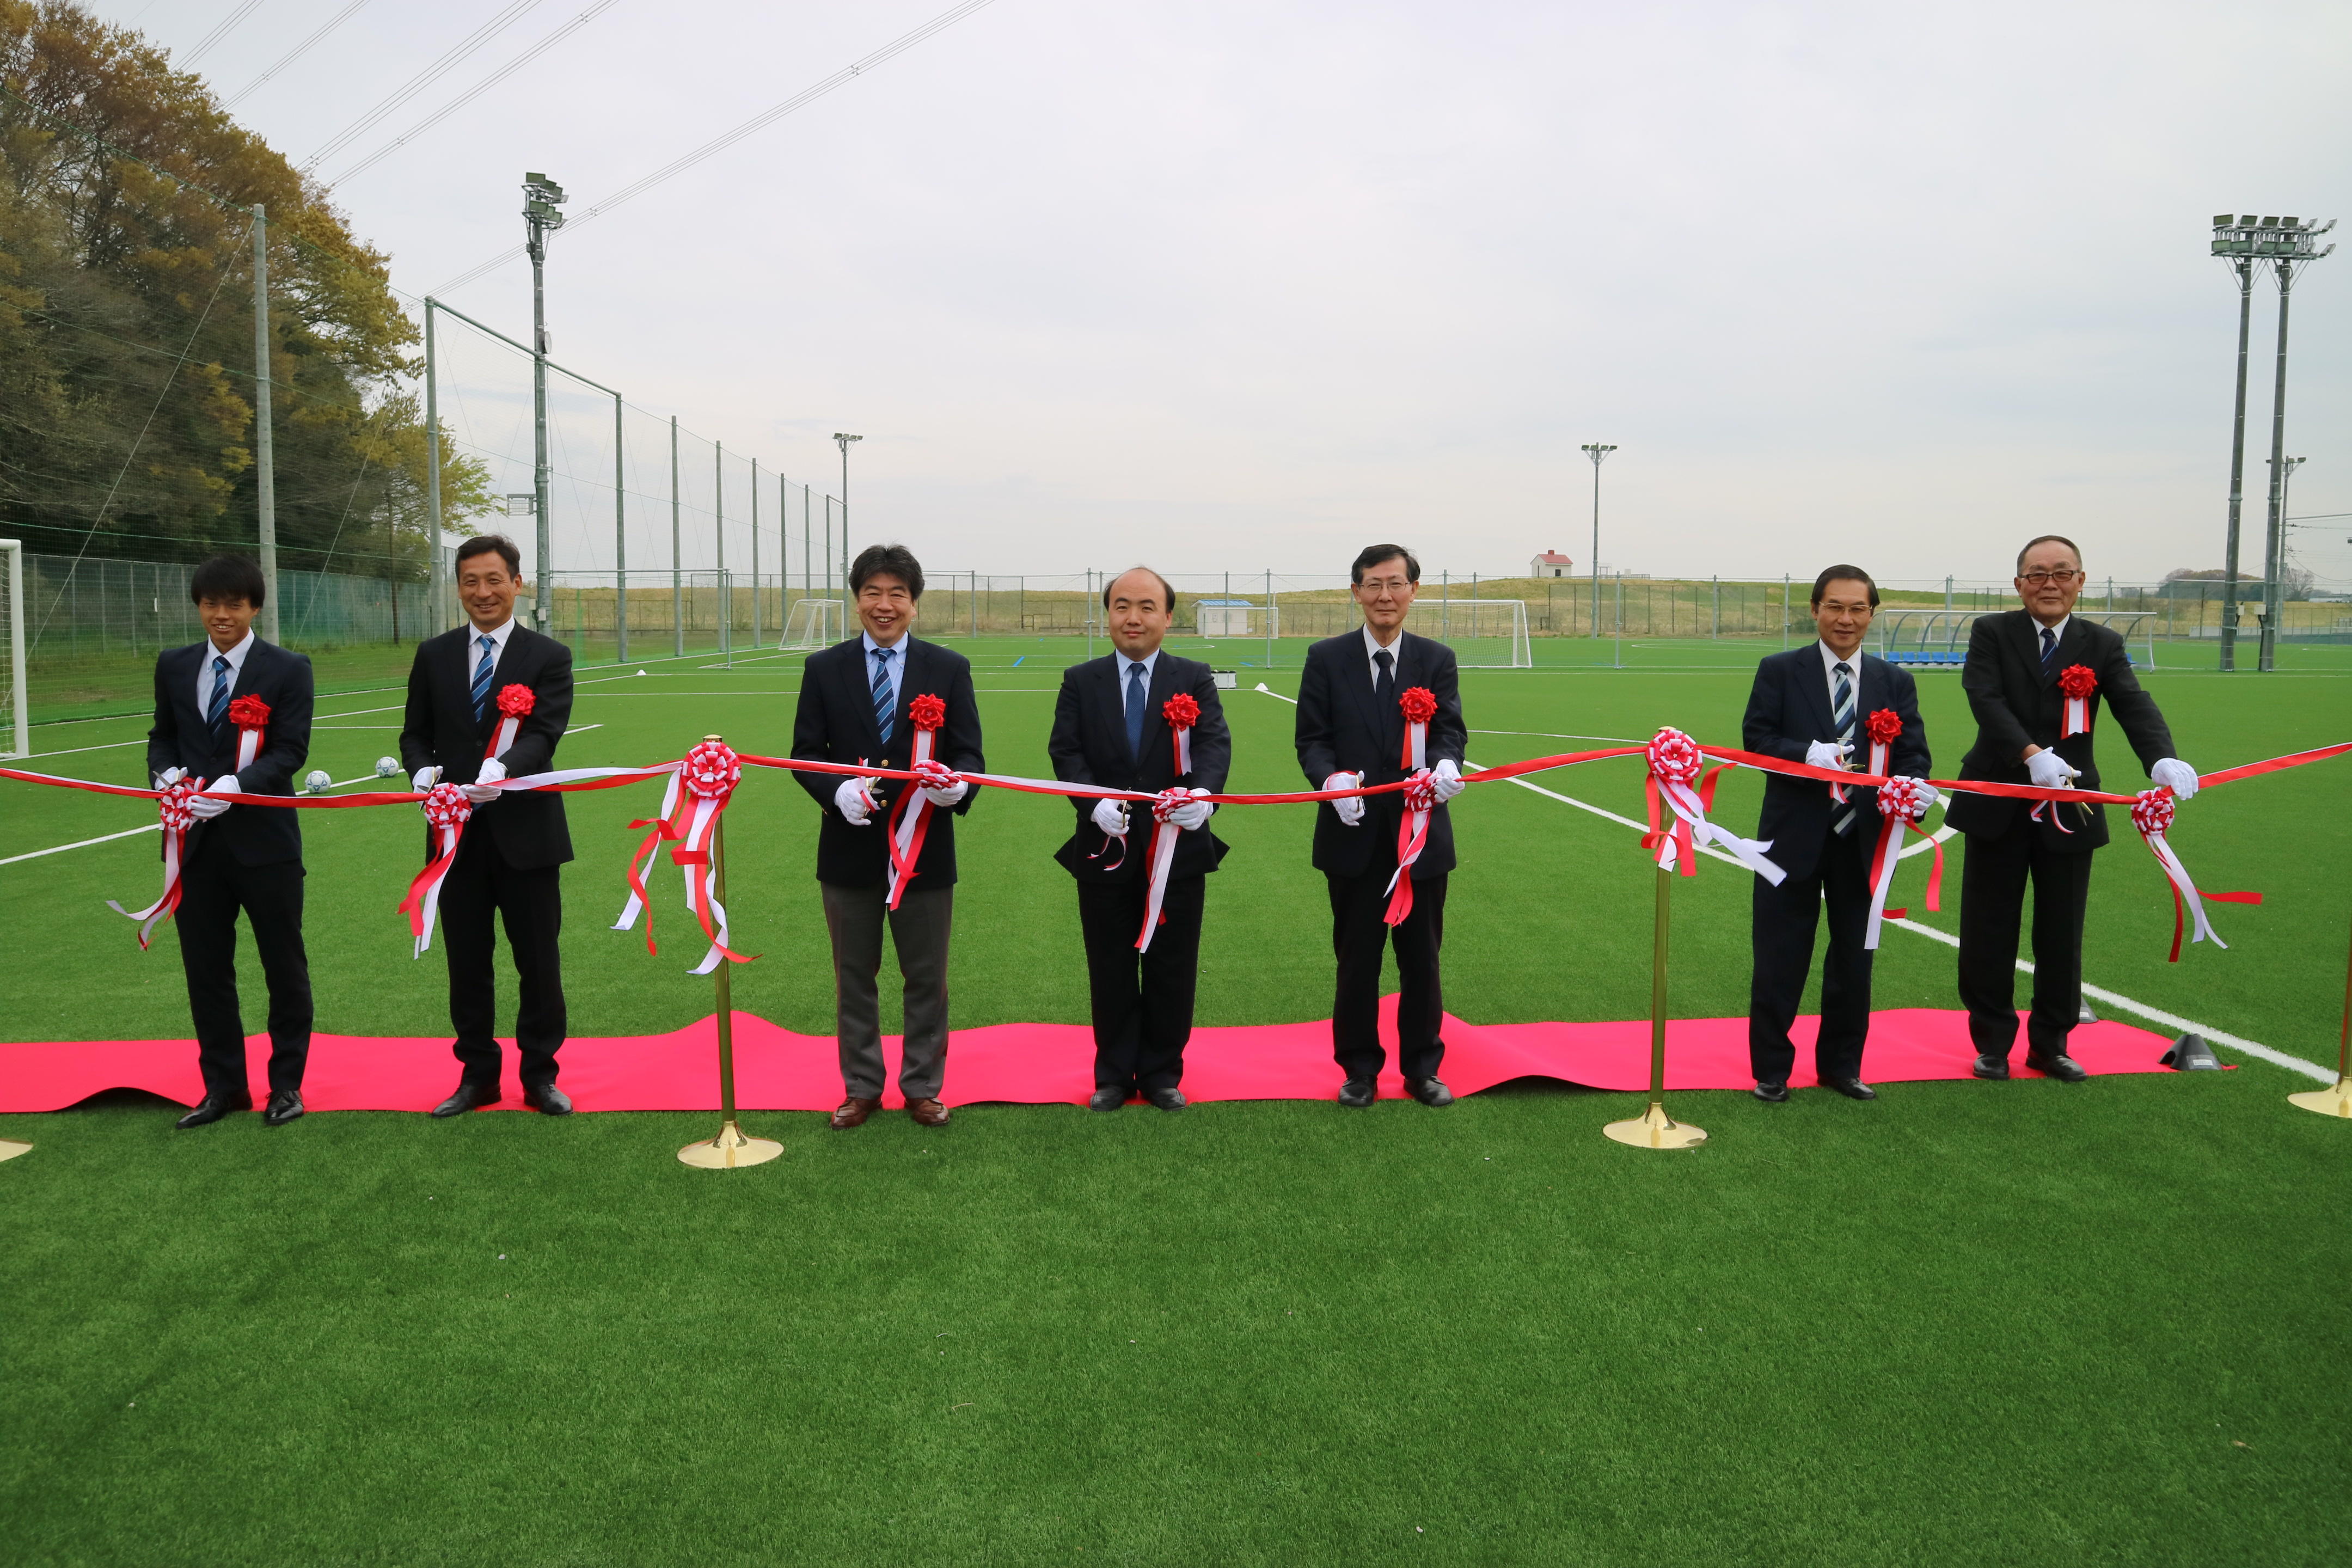 「江戸川大学フットボールフィールド柏」が完成 -- 4月12日にオープニングセレモニーを開催